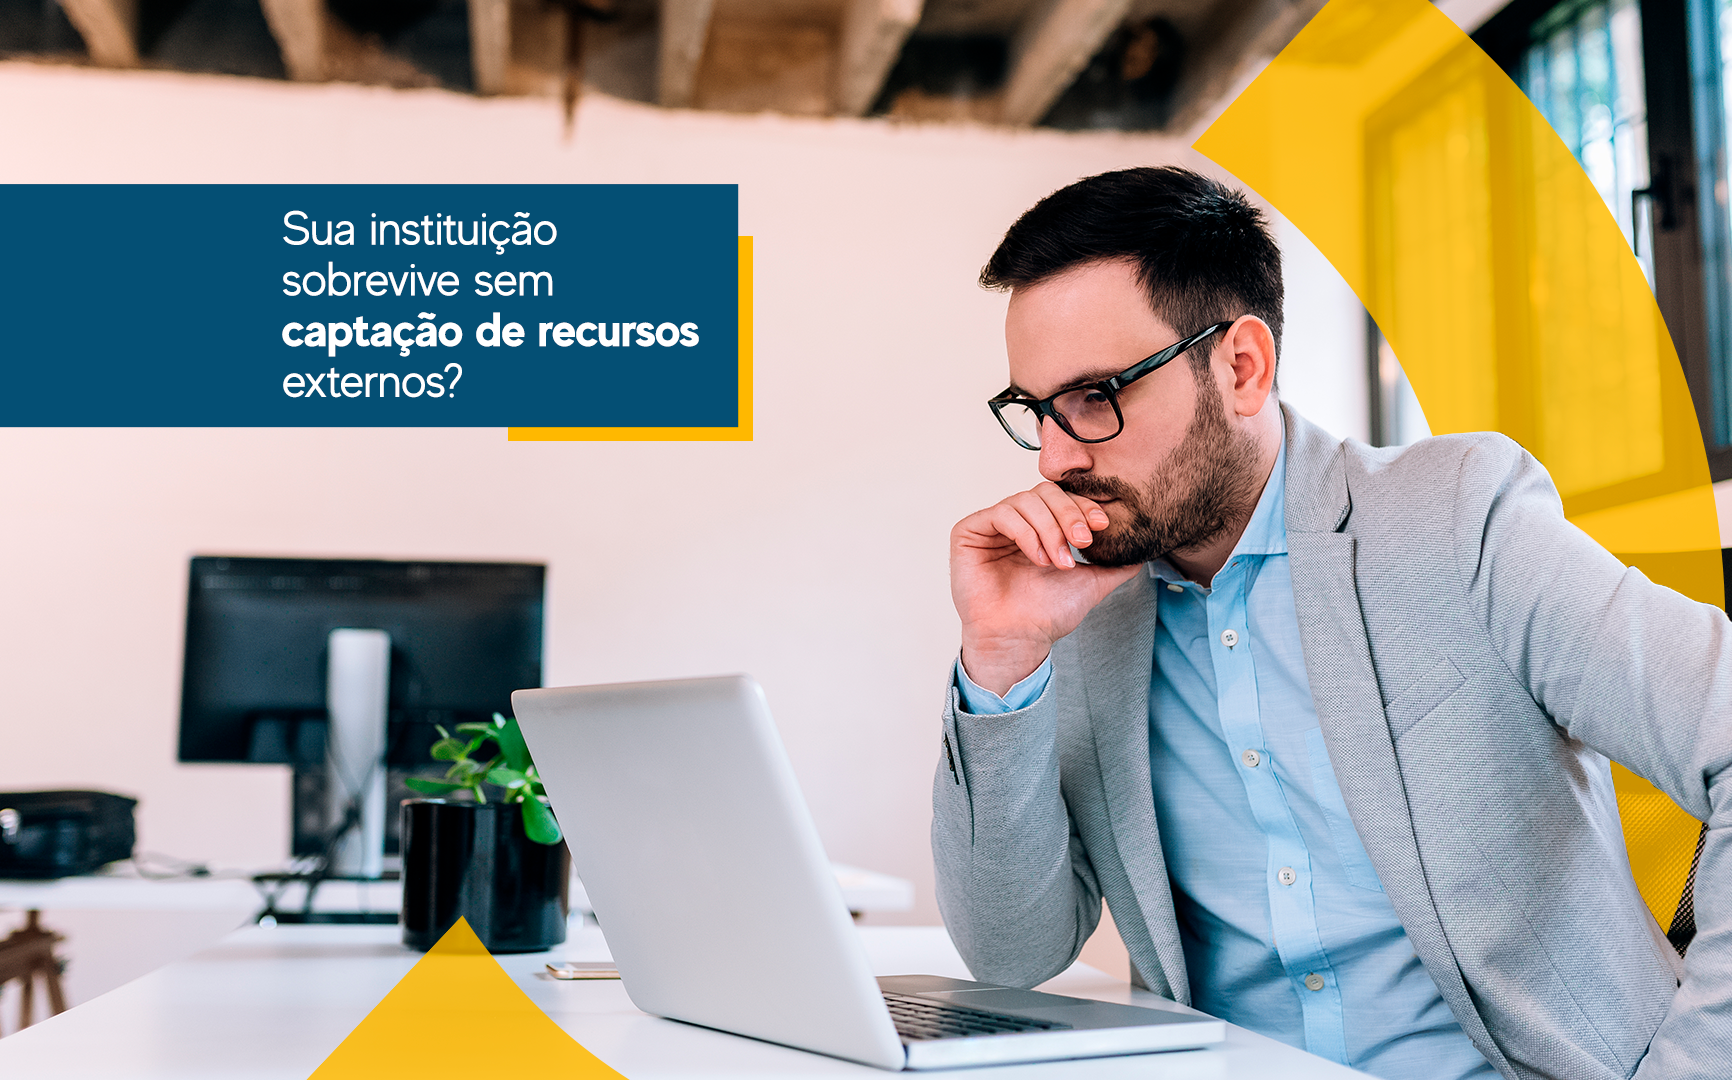 Sistema Mitryus Web - comentários, fotos, número de telefone e endereço -  Serviços empresariais em Curitiba 